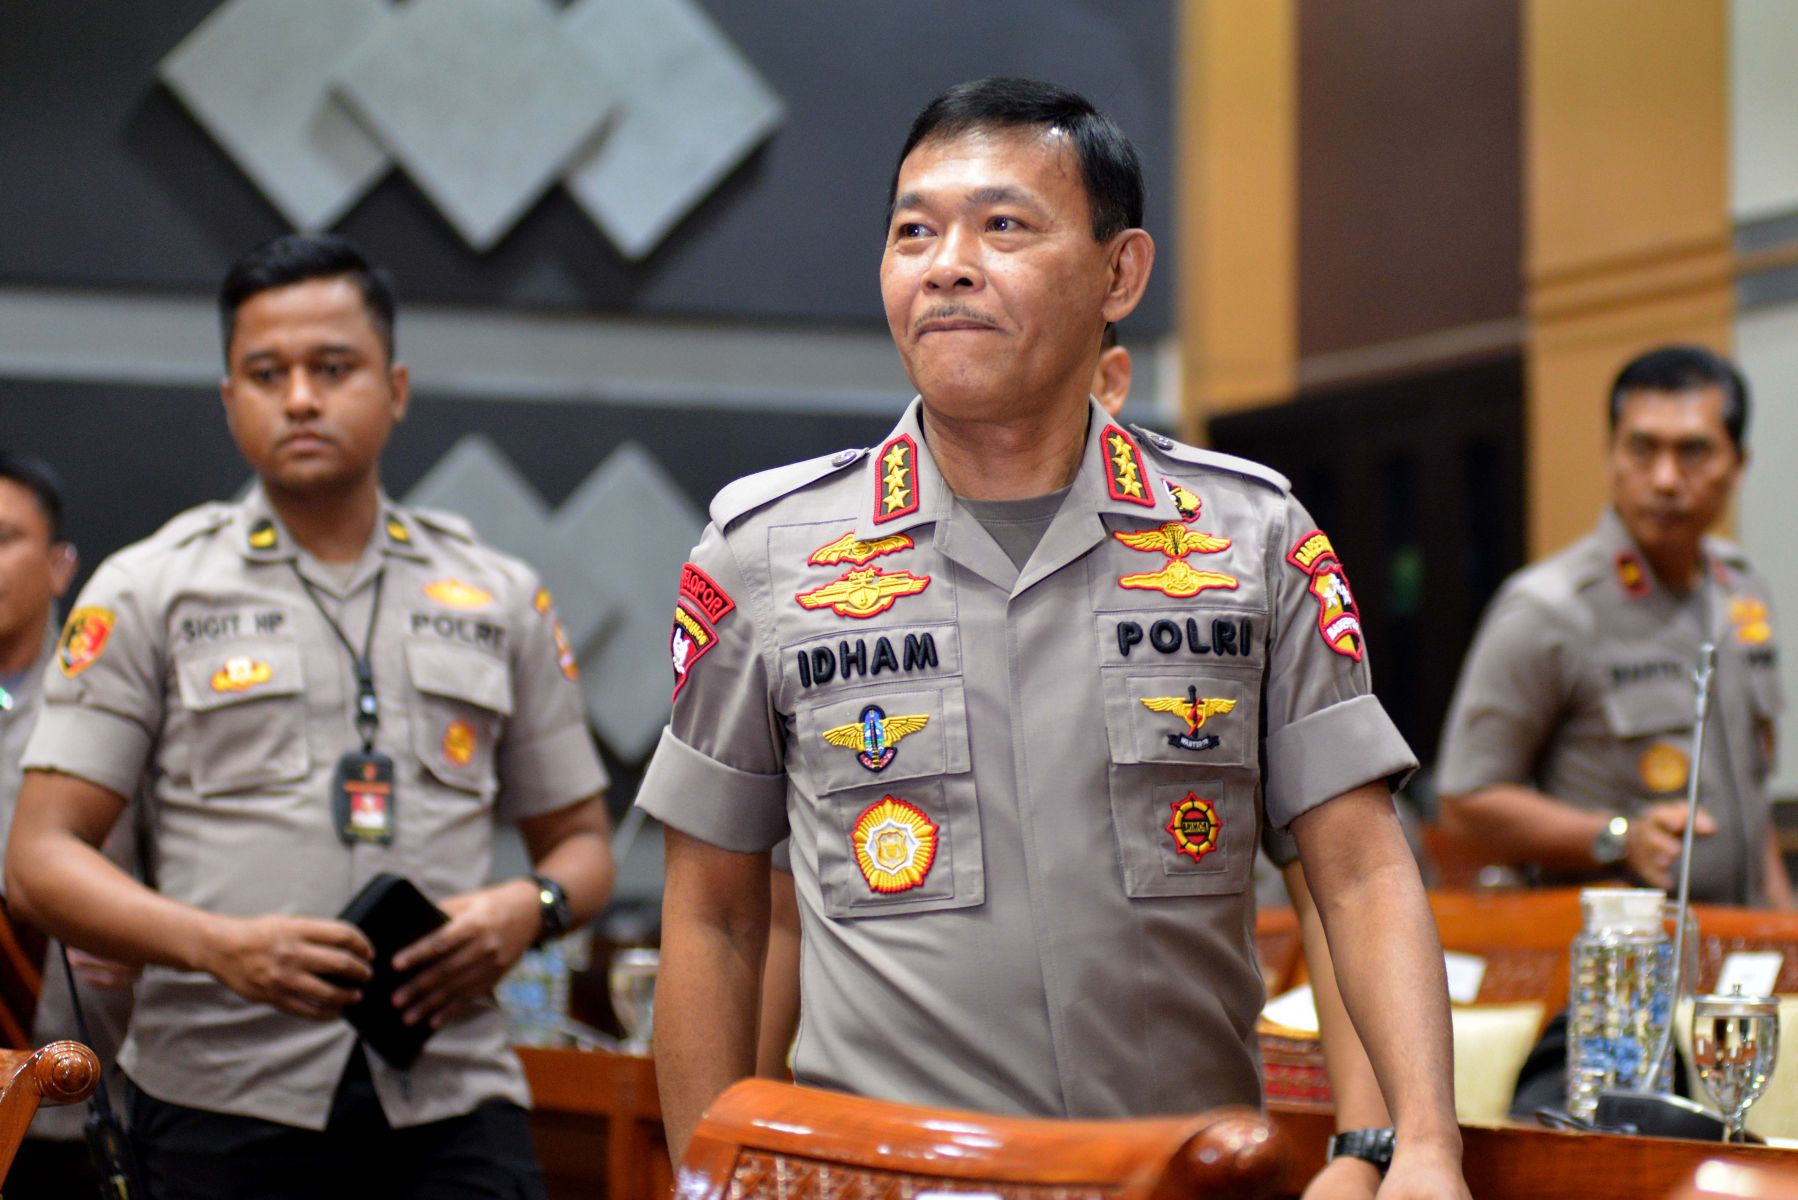 Kapolri Jenderal Polisi Drs. Idham Azis, M.Si